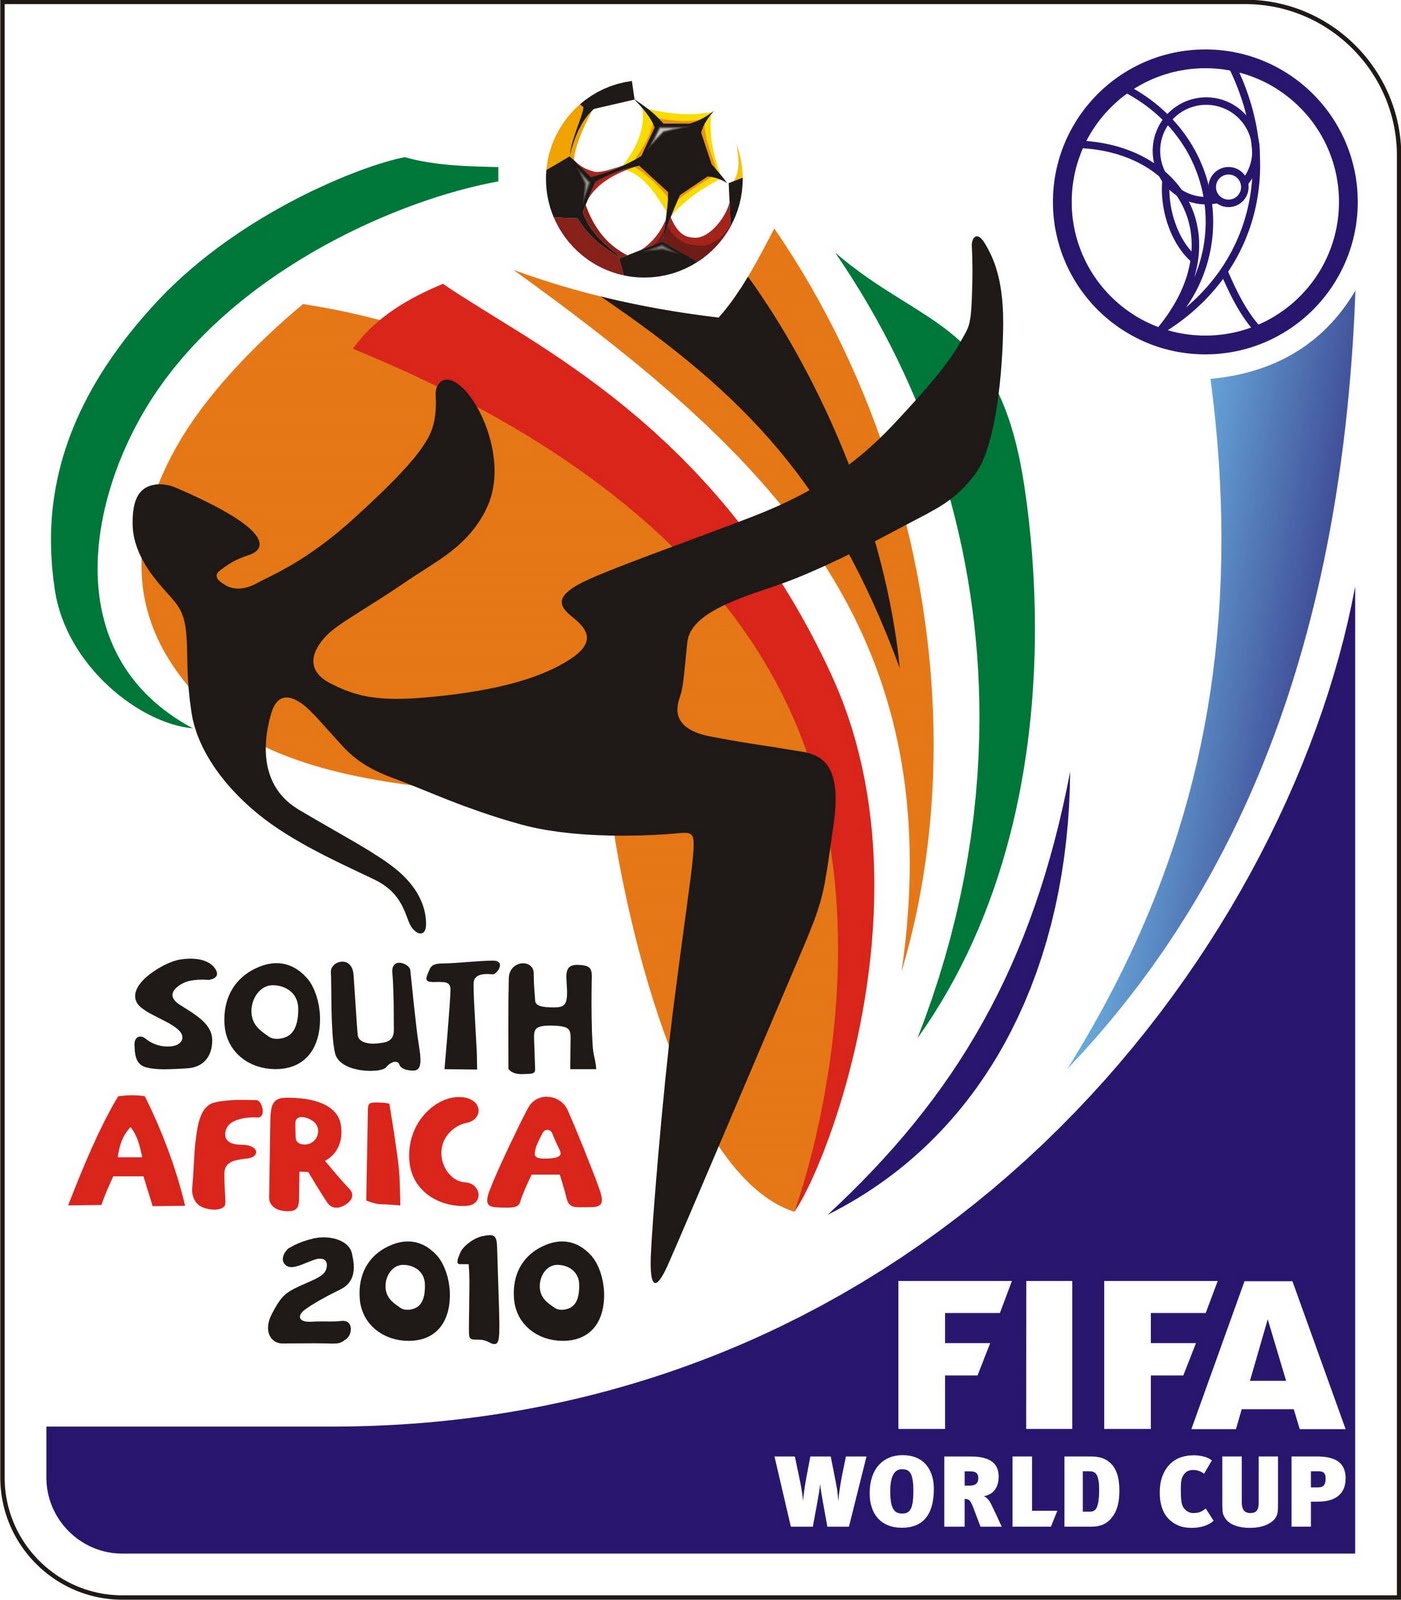 Piala Dunia FIFA 2010 WORLD FOOTBALL STORY